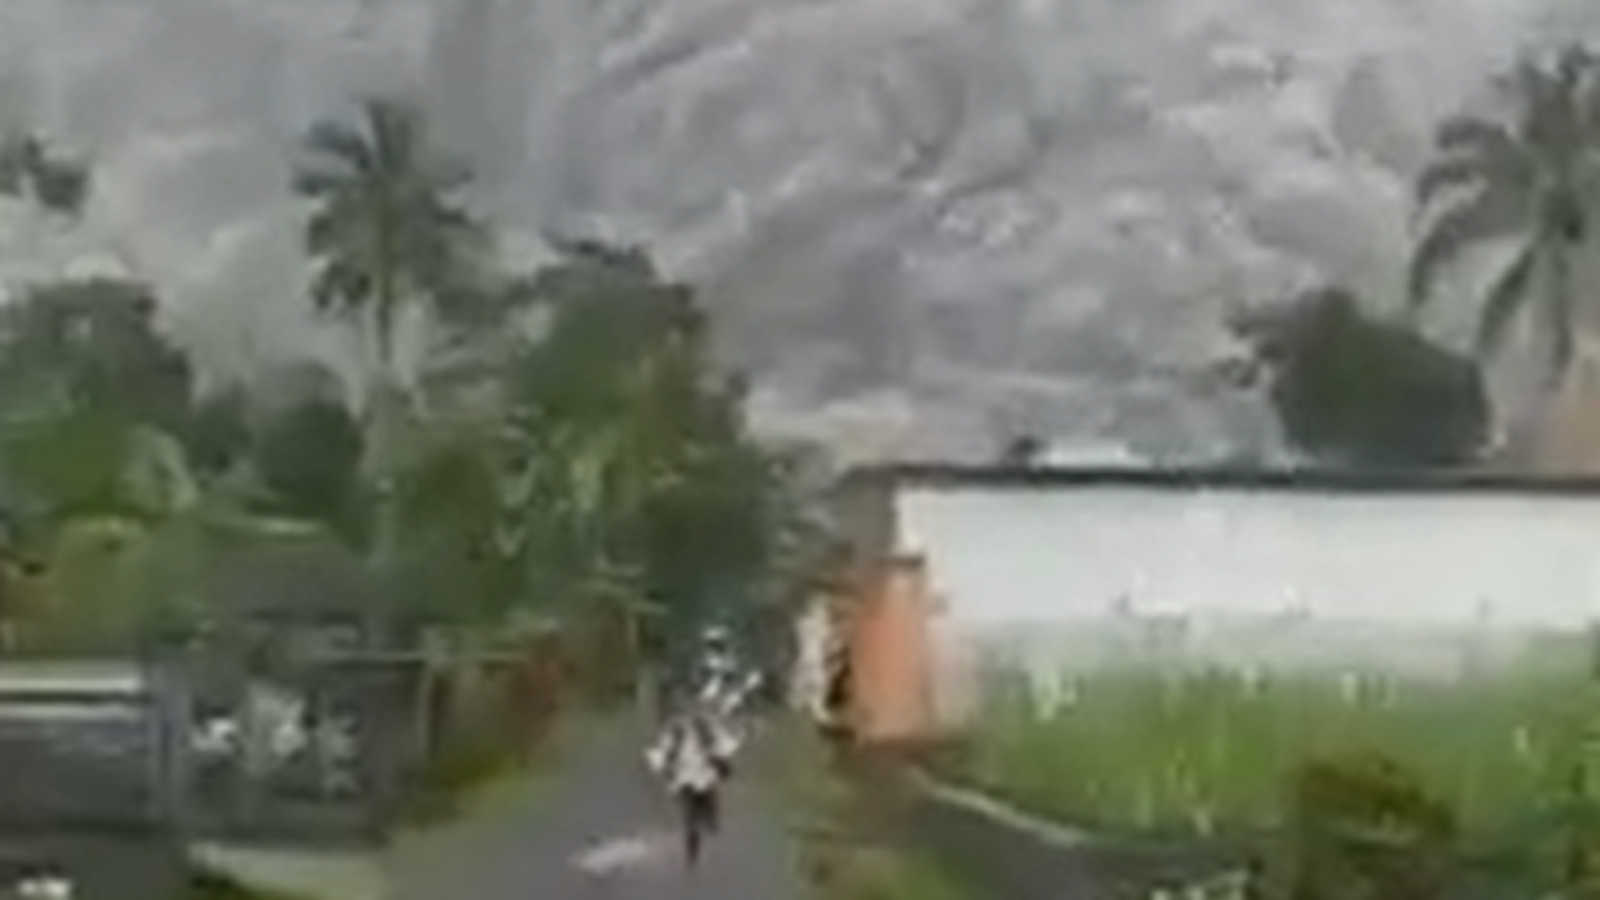 Letusan gunung berapi di Indonesia menyebabkan satu orang tewas dan puluhan lainnya terluka saat Gunung Semeru mengirimkan awan abu setinggi 50.000 kaki ke udara |  Berita Dunia